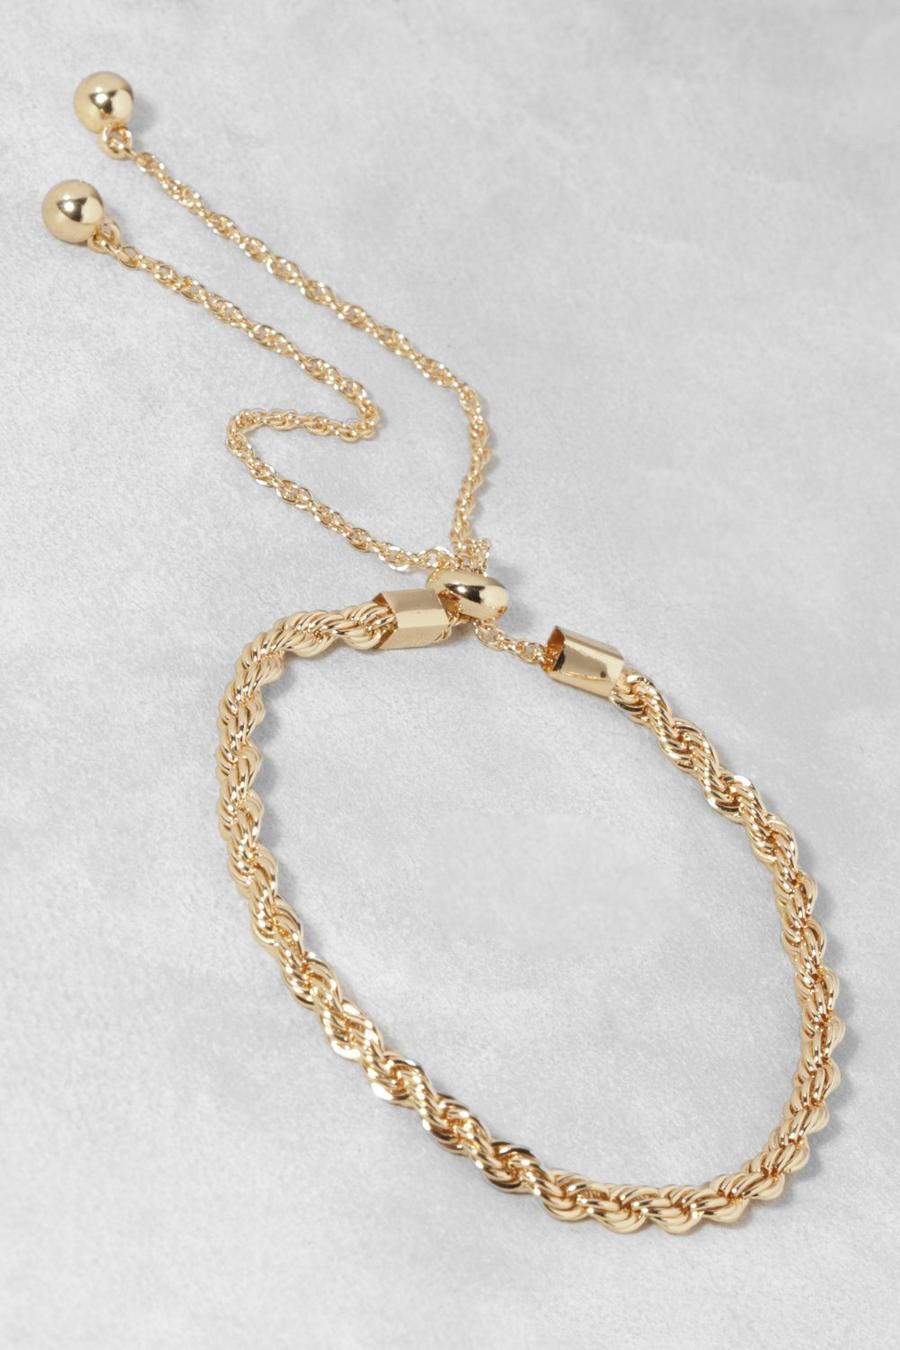 Bralette con alamar, nudo y cuerda pulida, Gold metallizzato